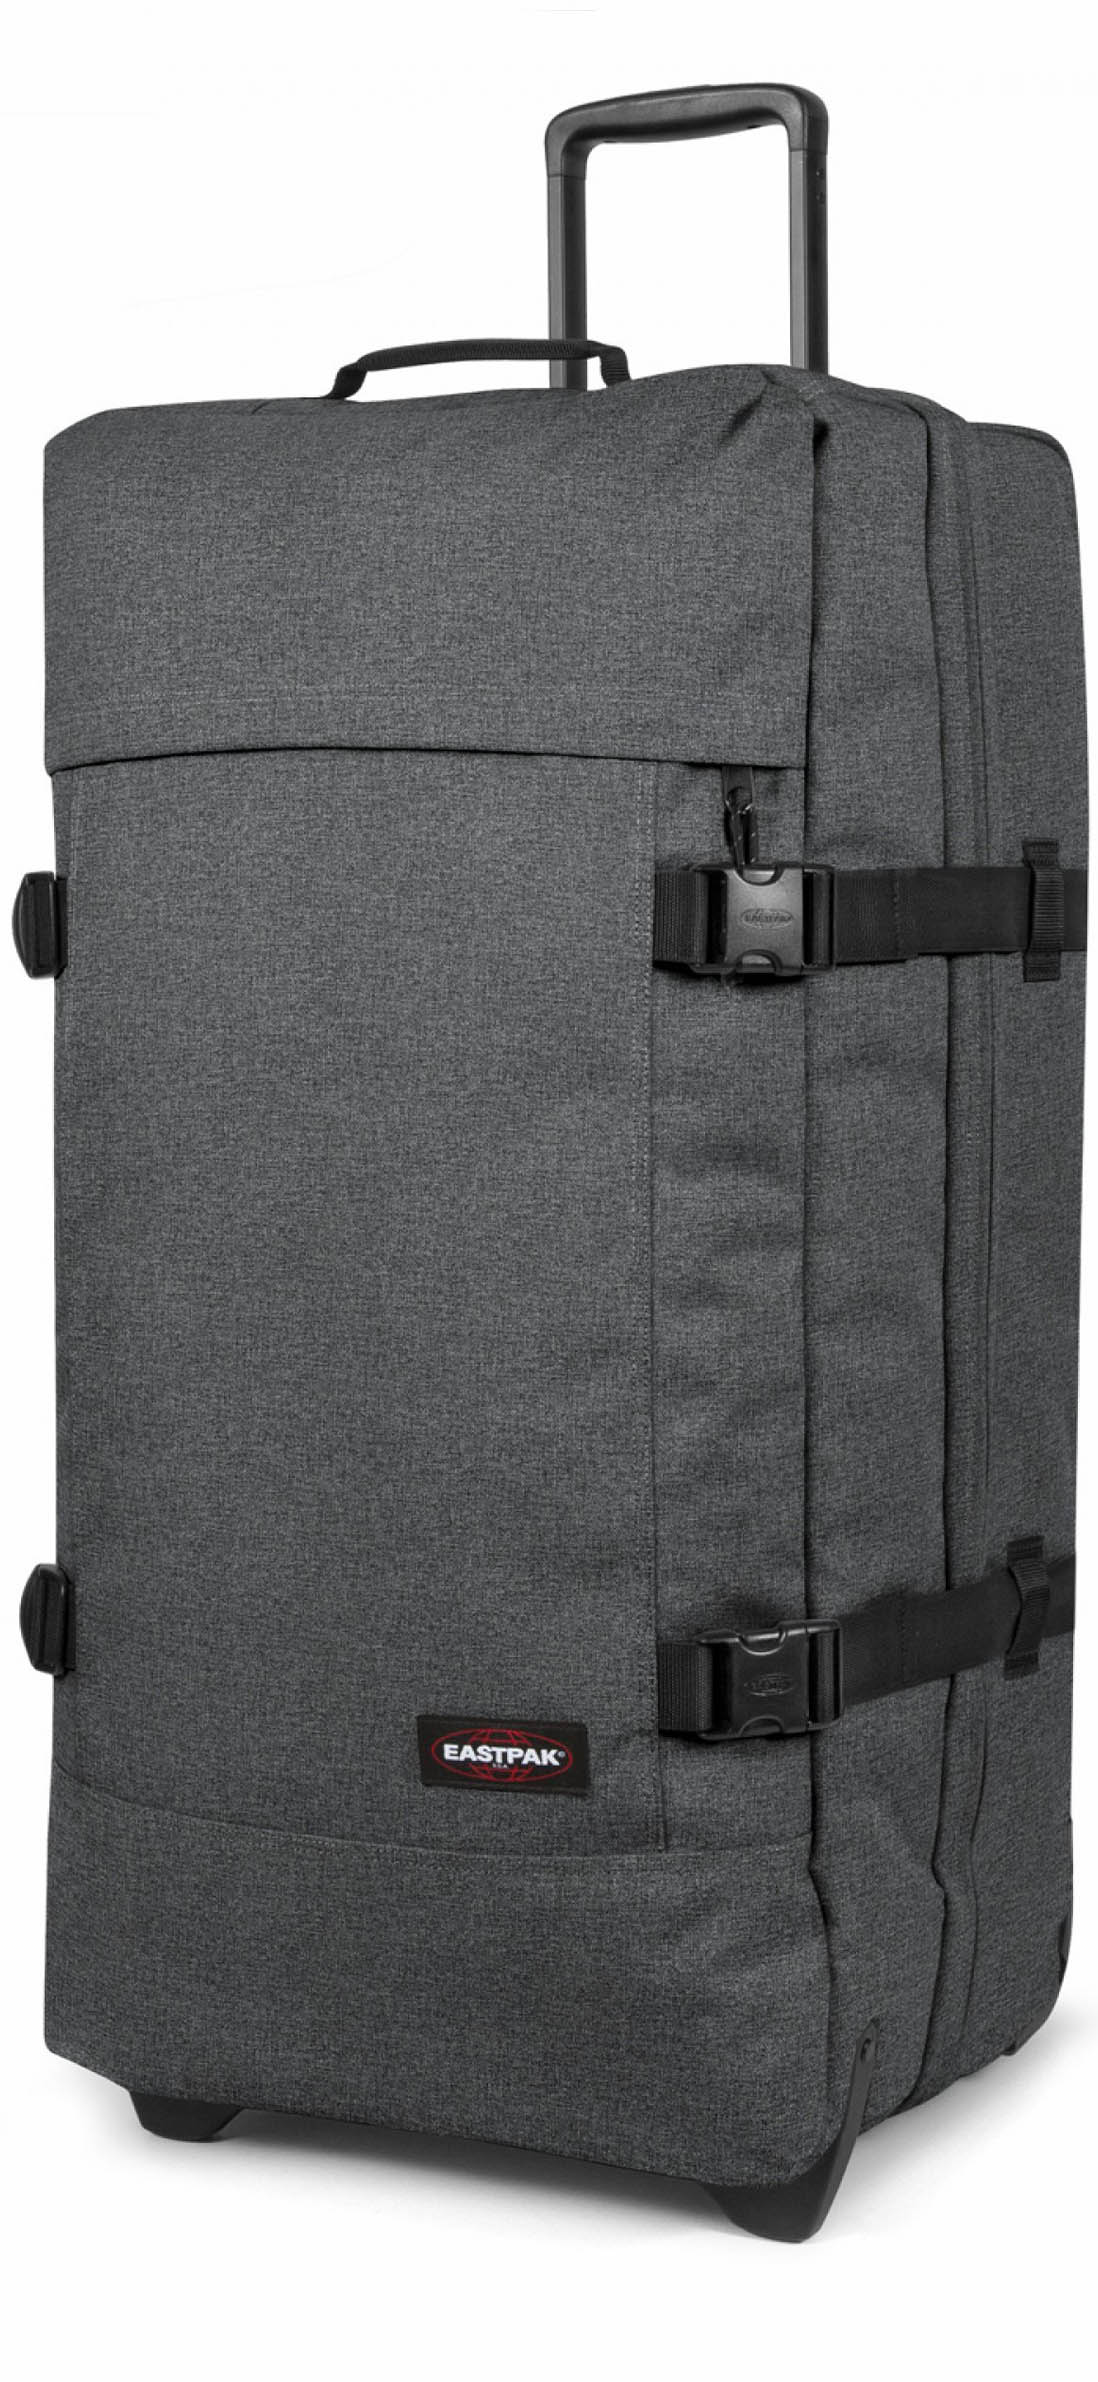 Eastpak Tranverz L Suitcase - Black Denim